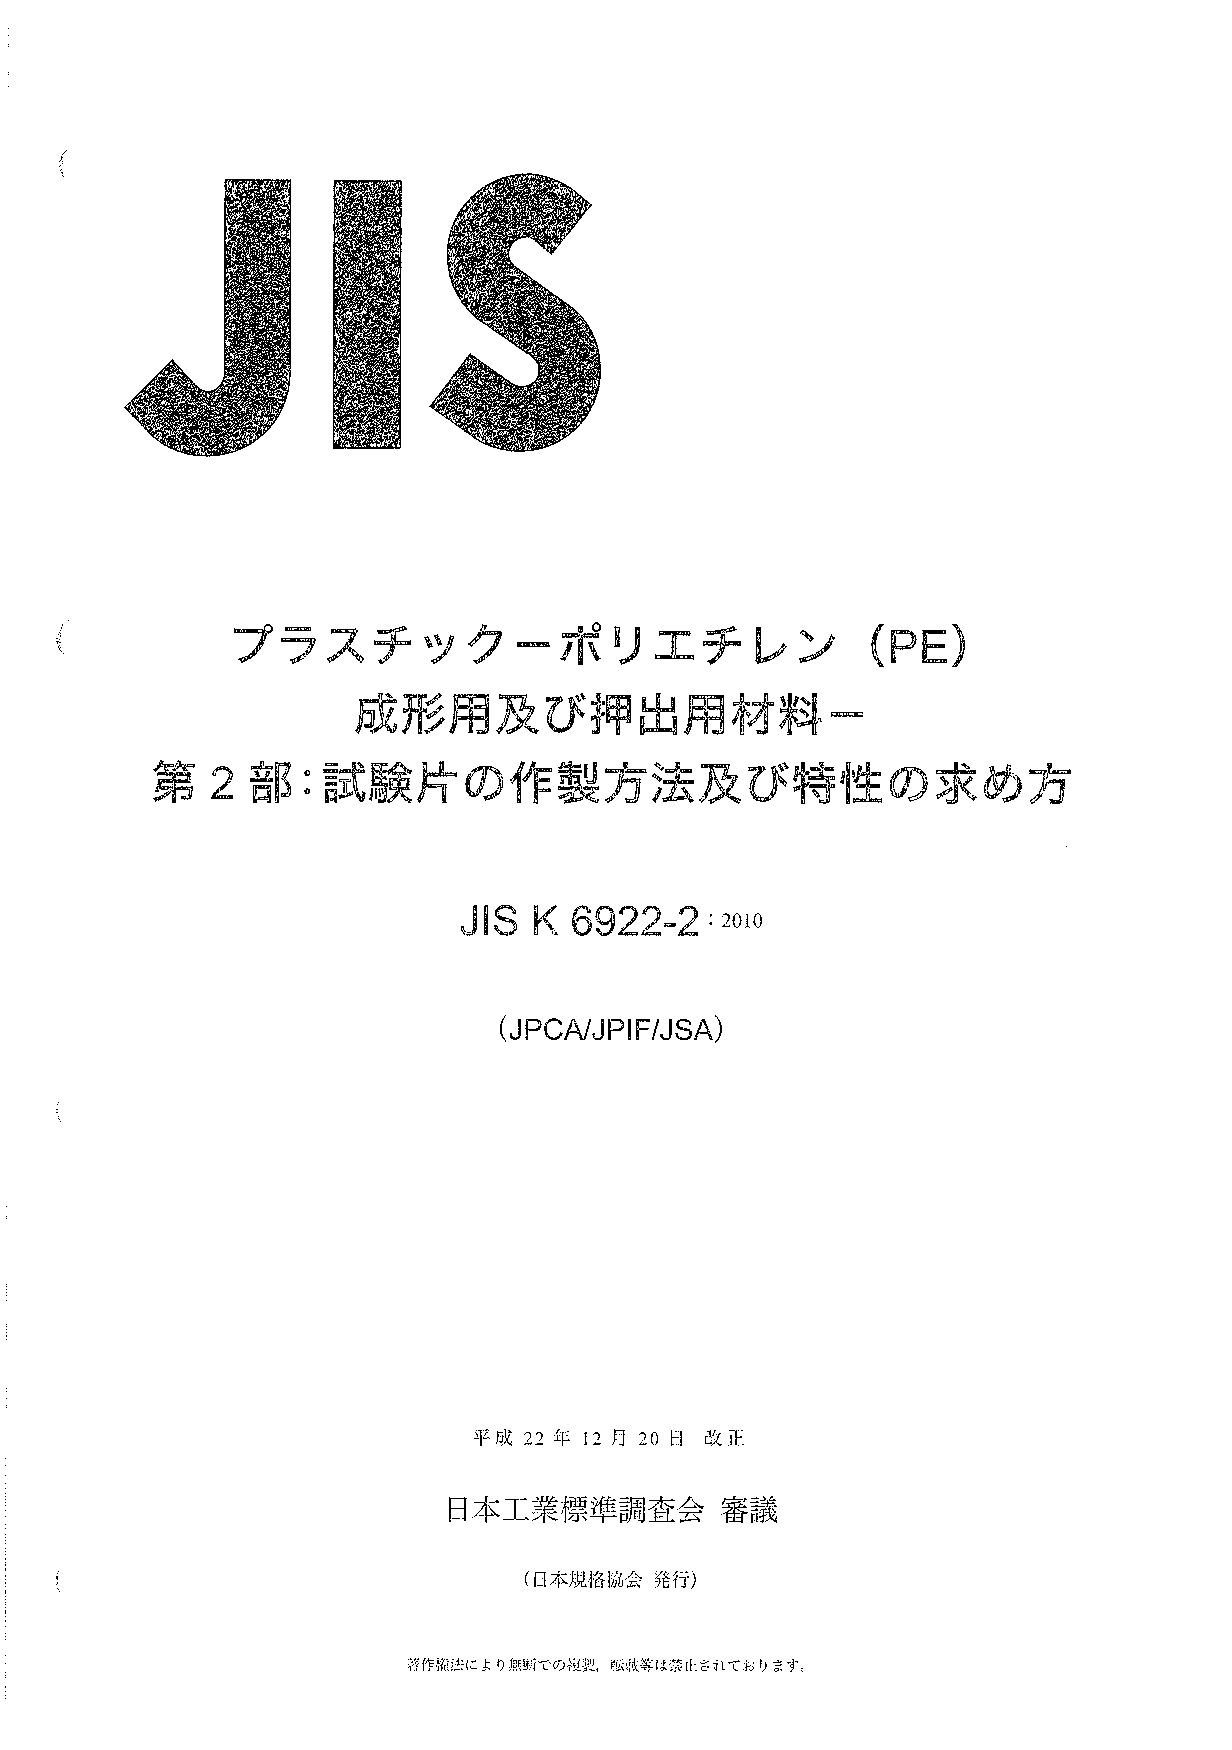 JIS K 6922-2:2010封面图